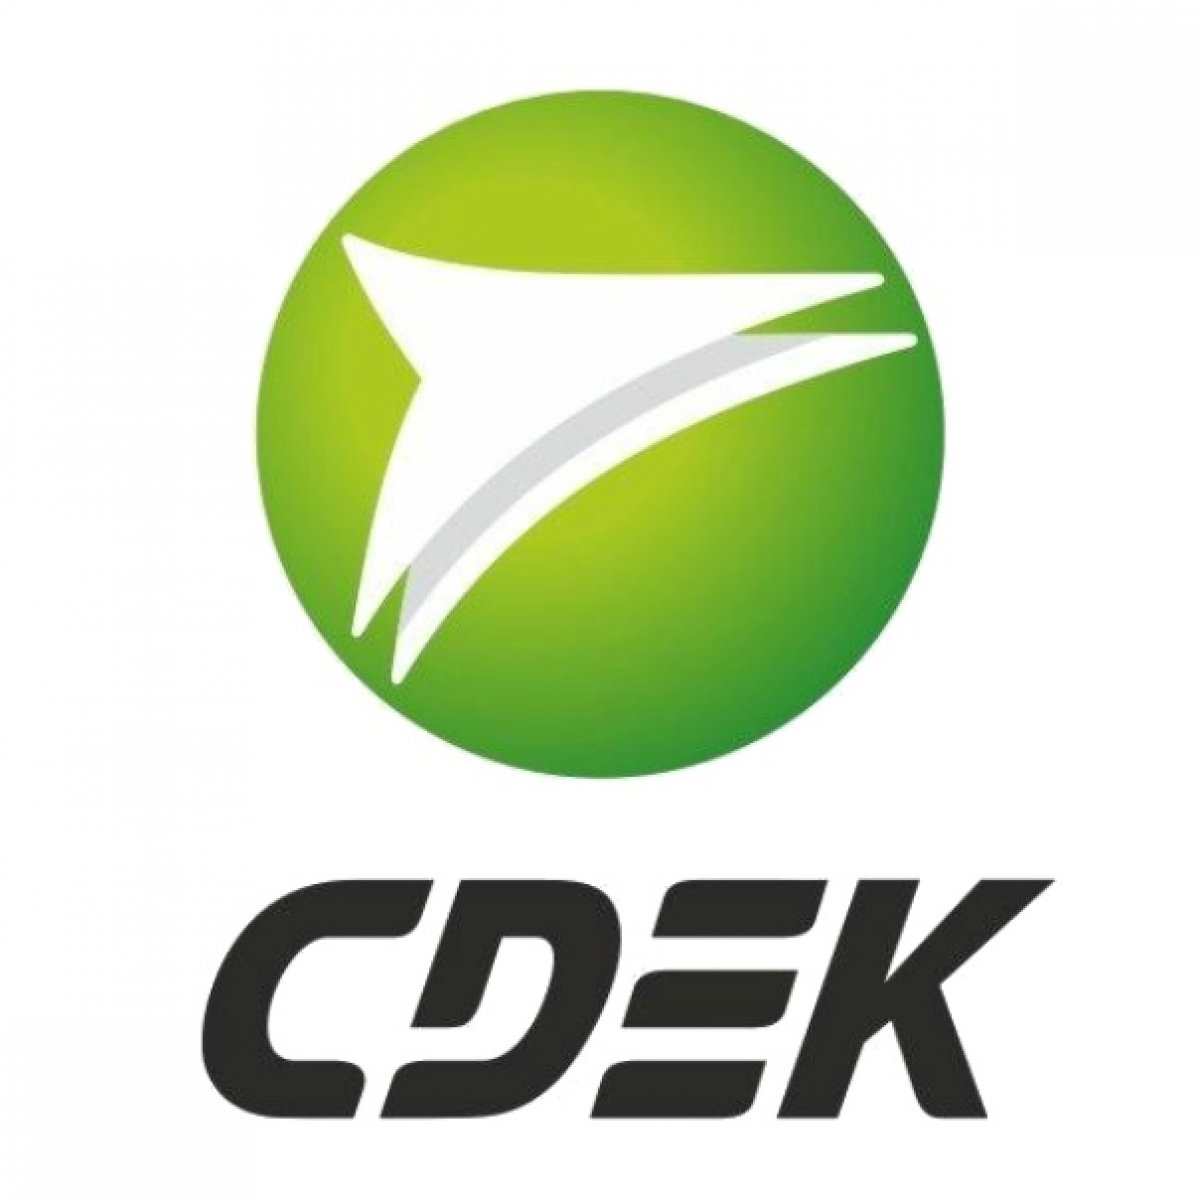 «CDEK» Новость от 02-06-2019